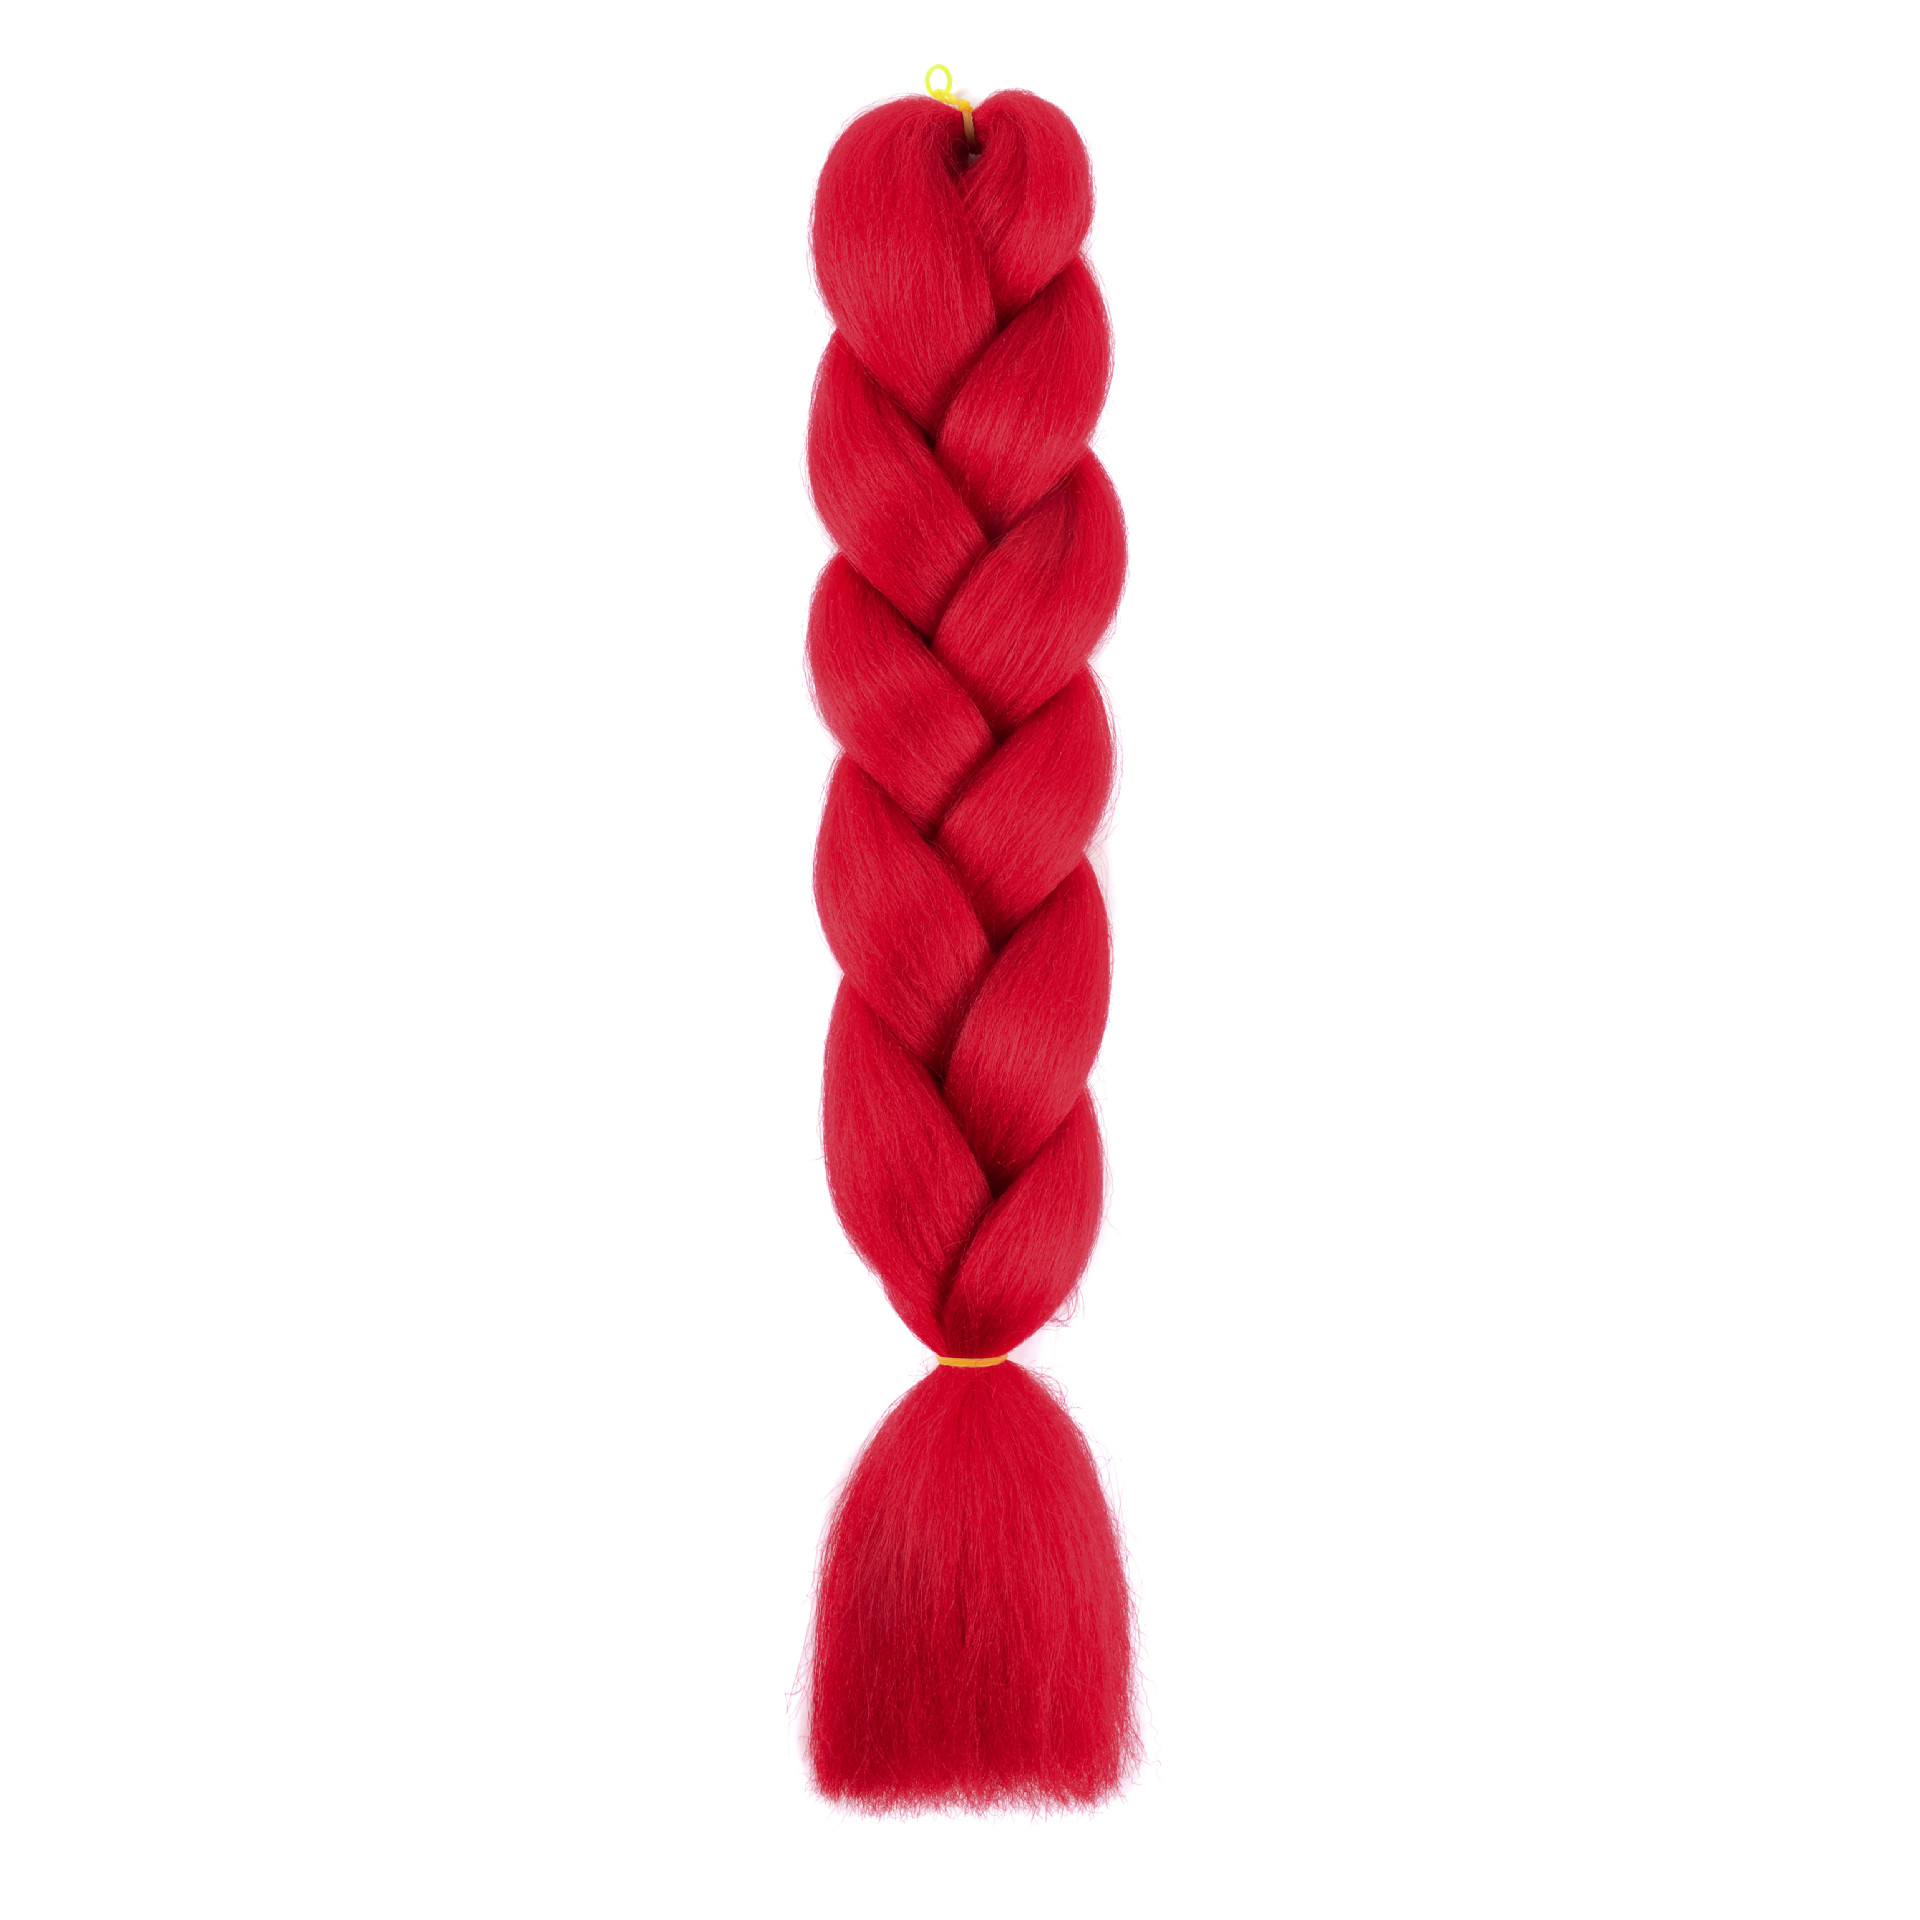 Big braid monochrome colorful chemical fiber big braid African dirty braid wig hair extension braided hair dirty braid twist braid